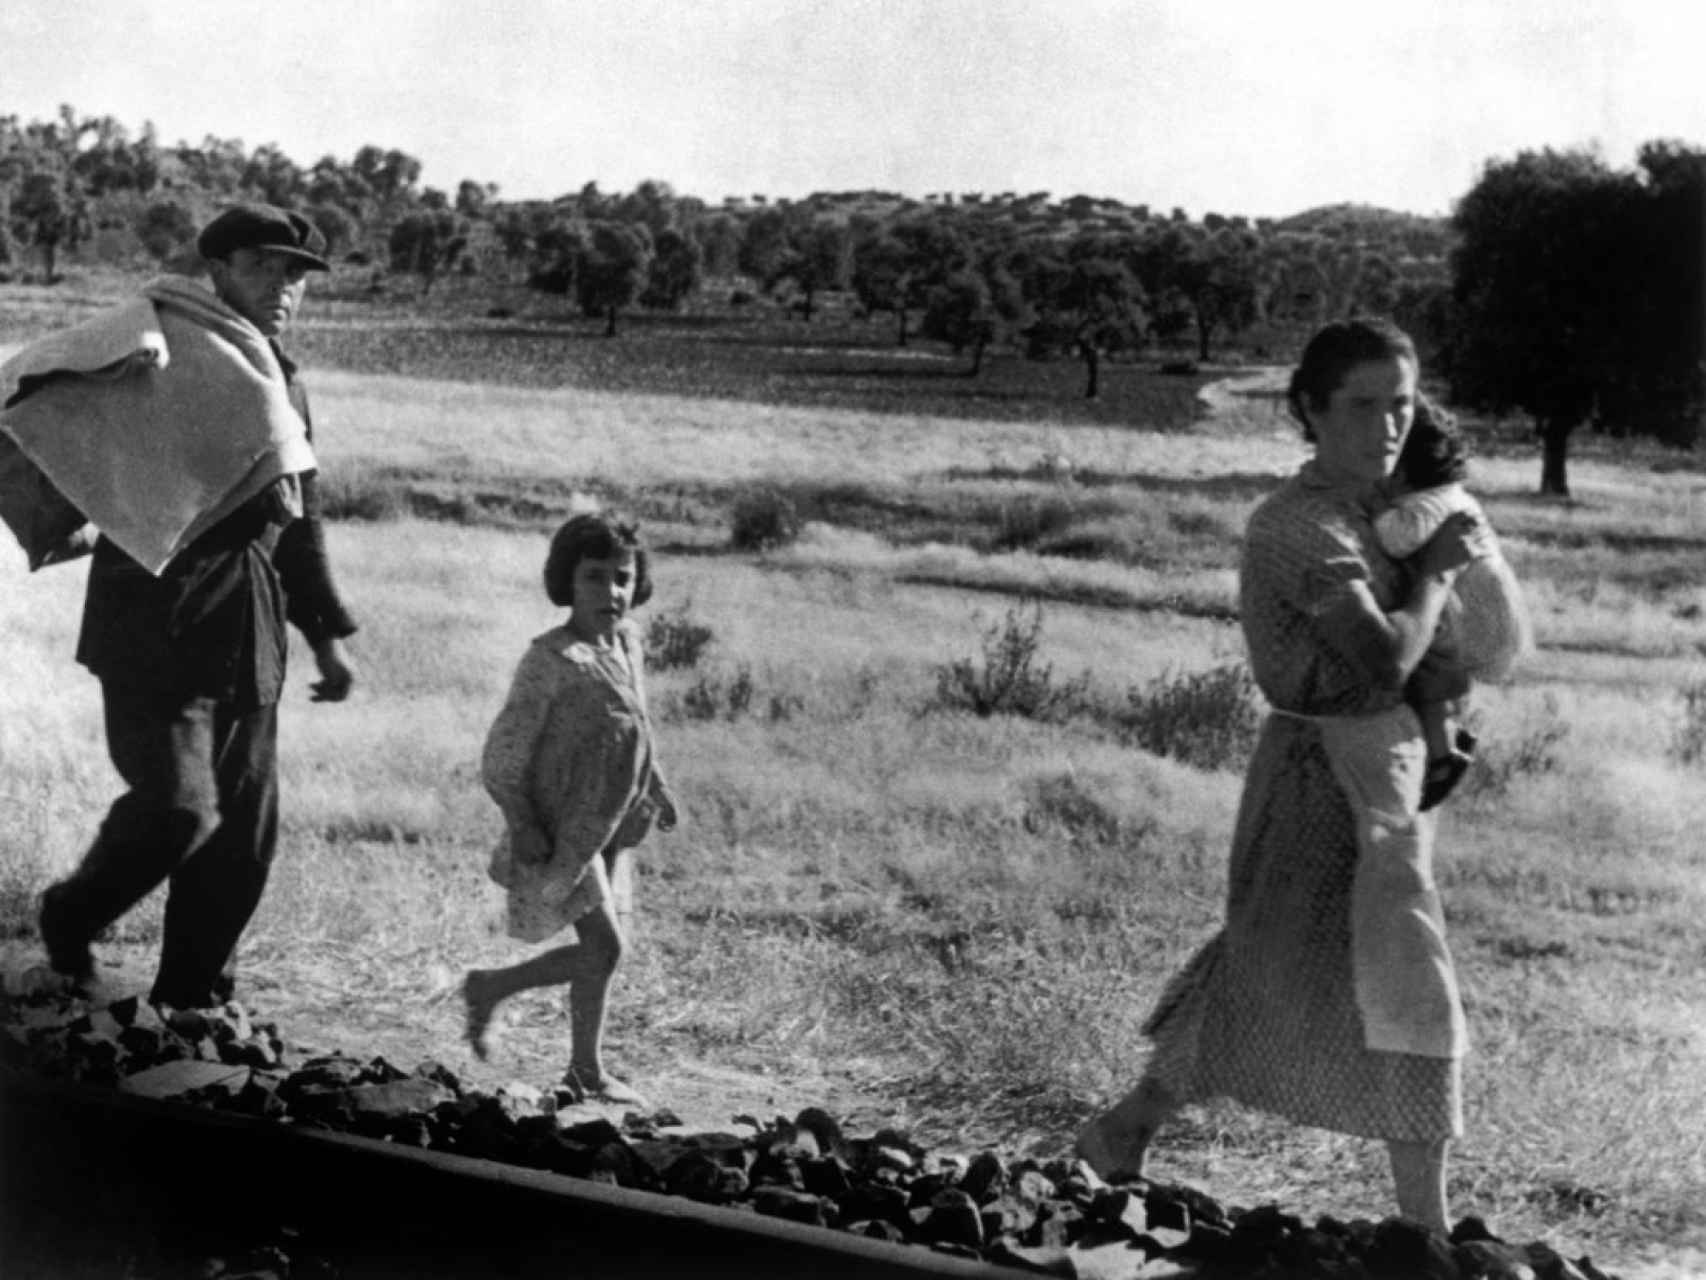 Imagen tomada en Cerro Muriano, Córdoba, el 5 de septiembre de 1936, que muestra a varios civiles huyendo. Robert Capa / Magnum Photos / Contacto